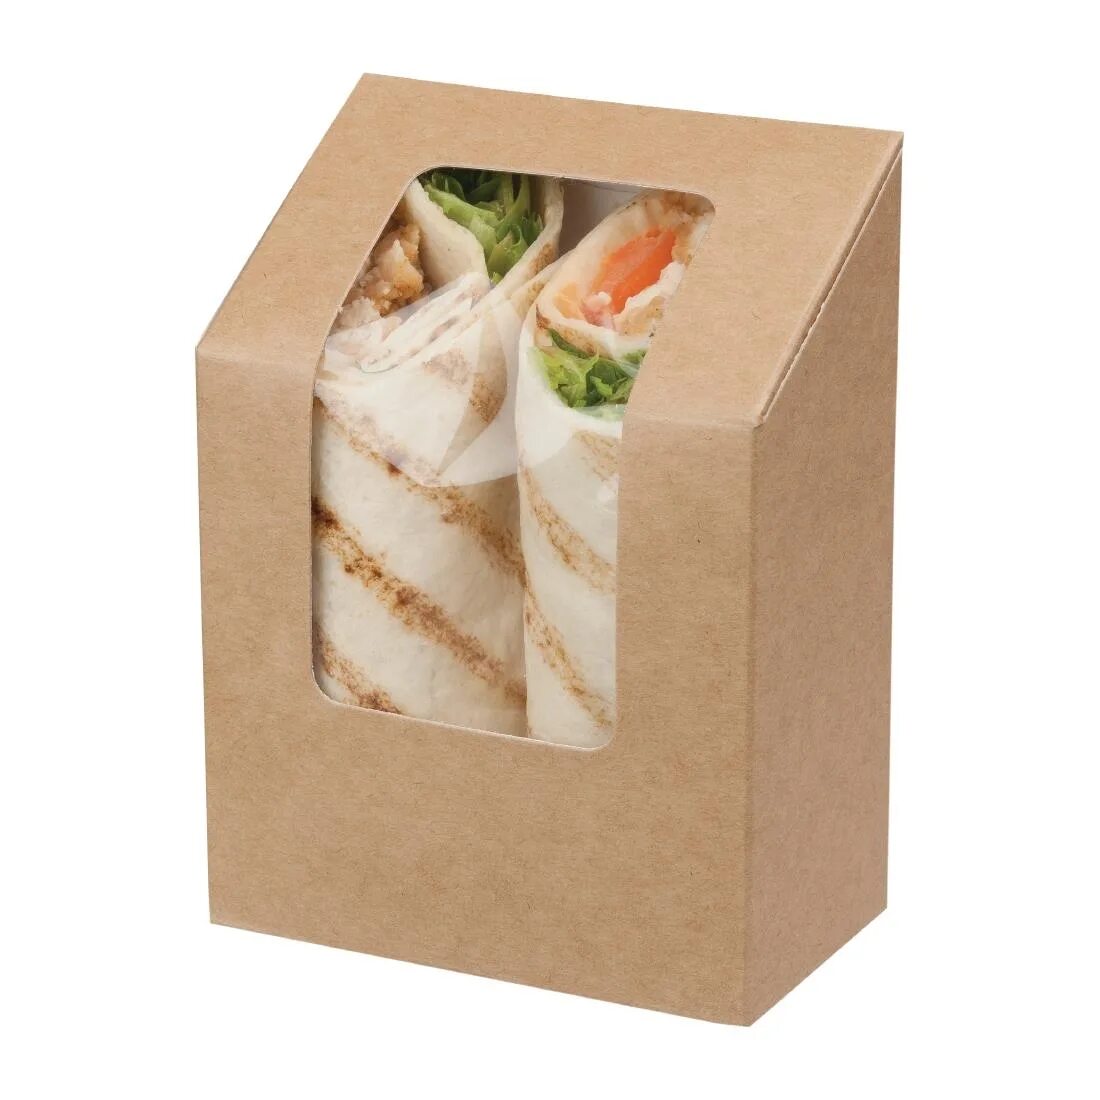 Сэндвич в упаковке. Коробка для сэндвичей. Красивая упаковка для сэндвичей. Крафтовая упаковка для сэндвичей.